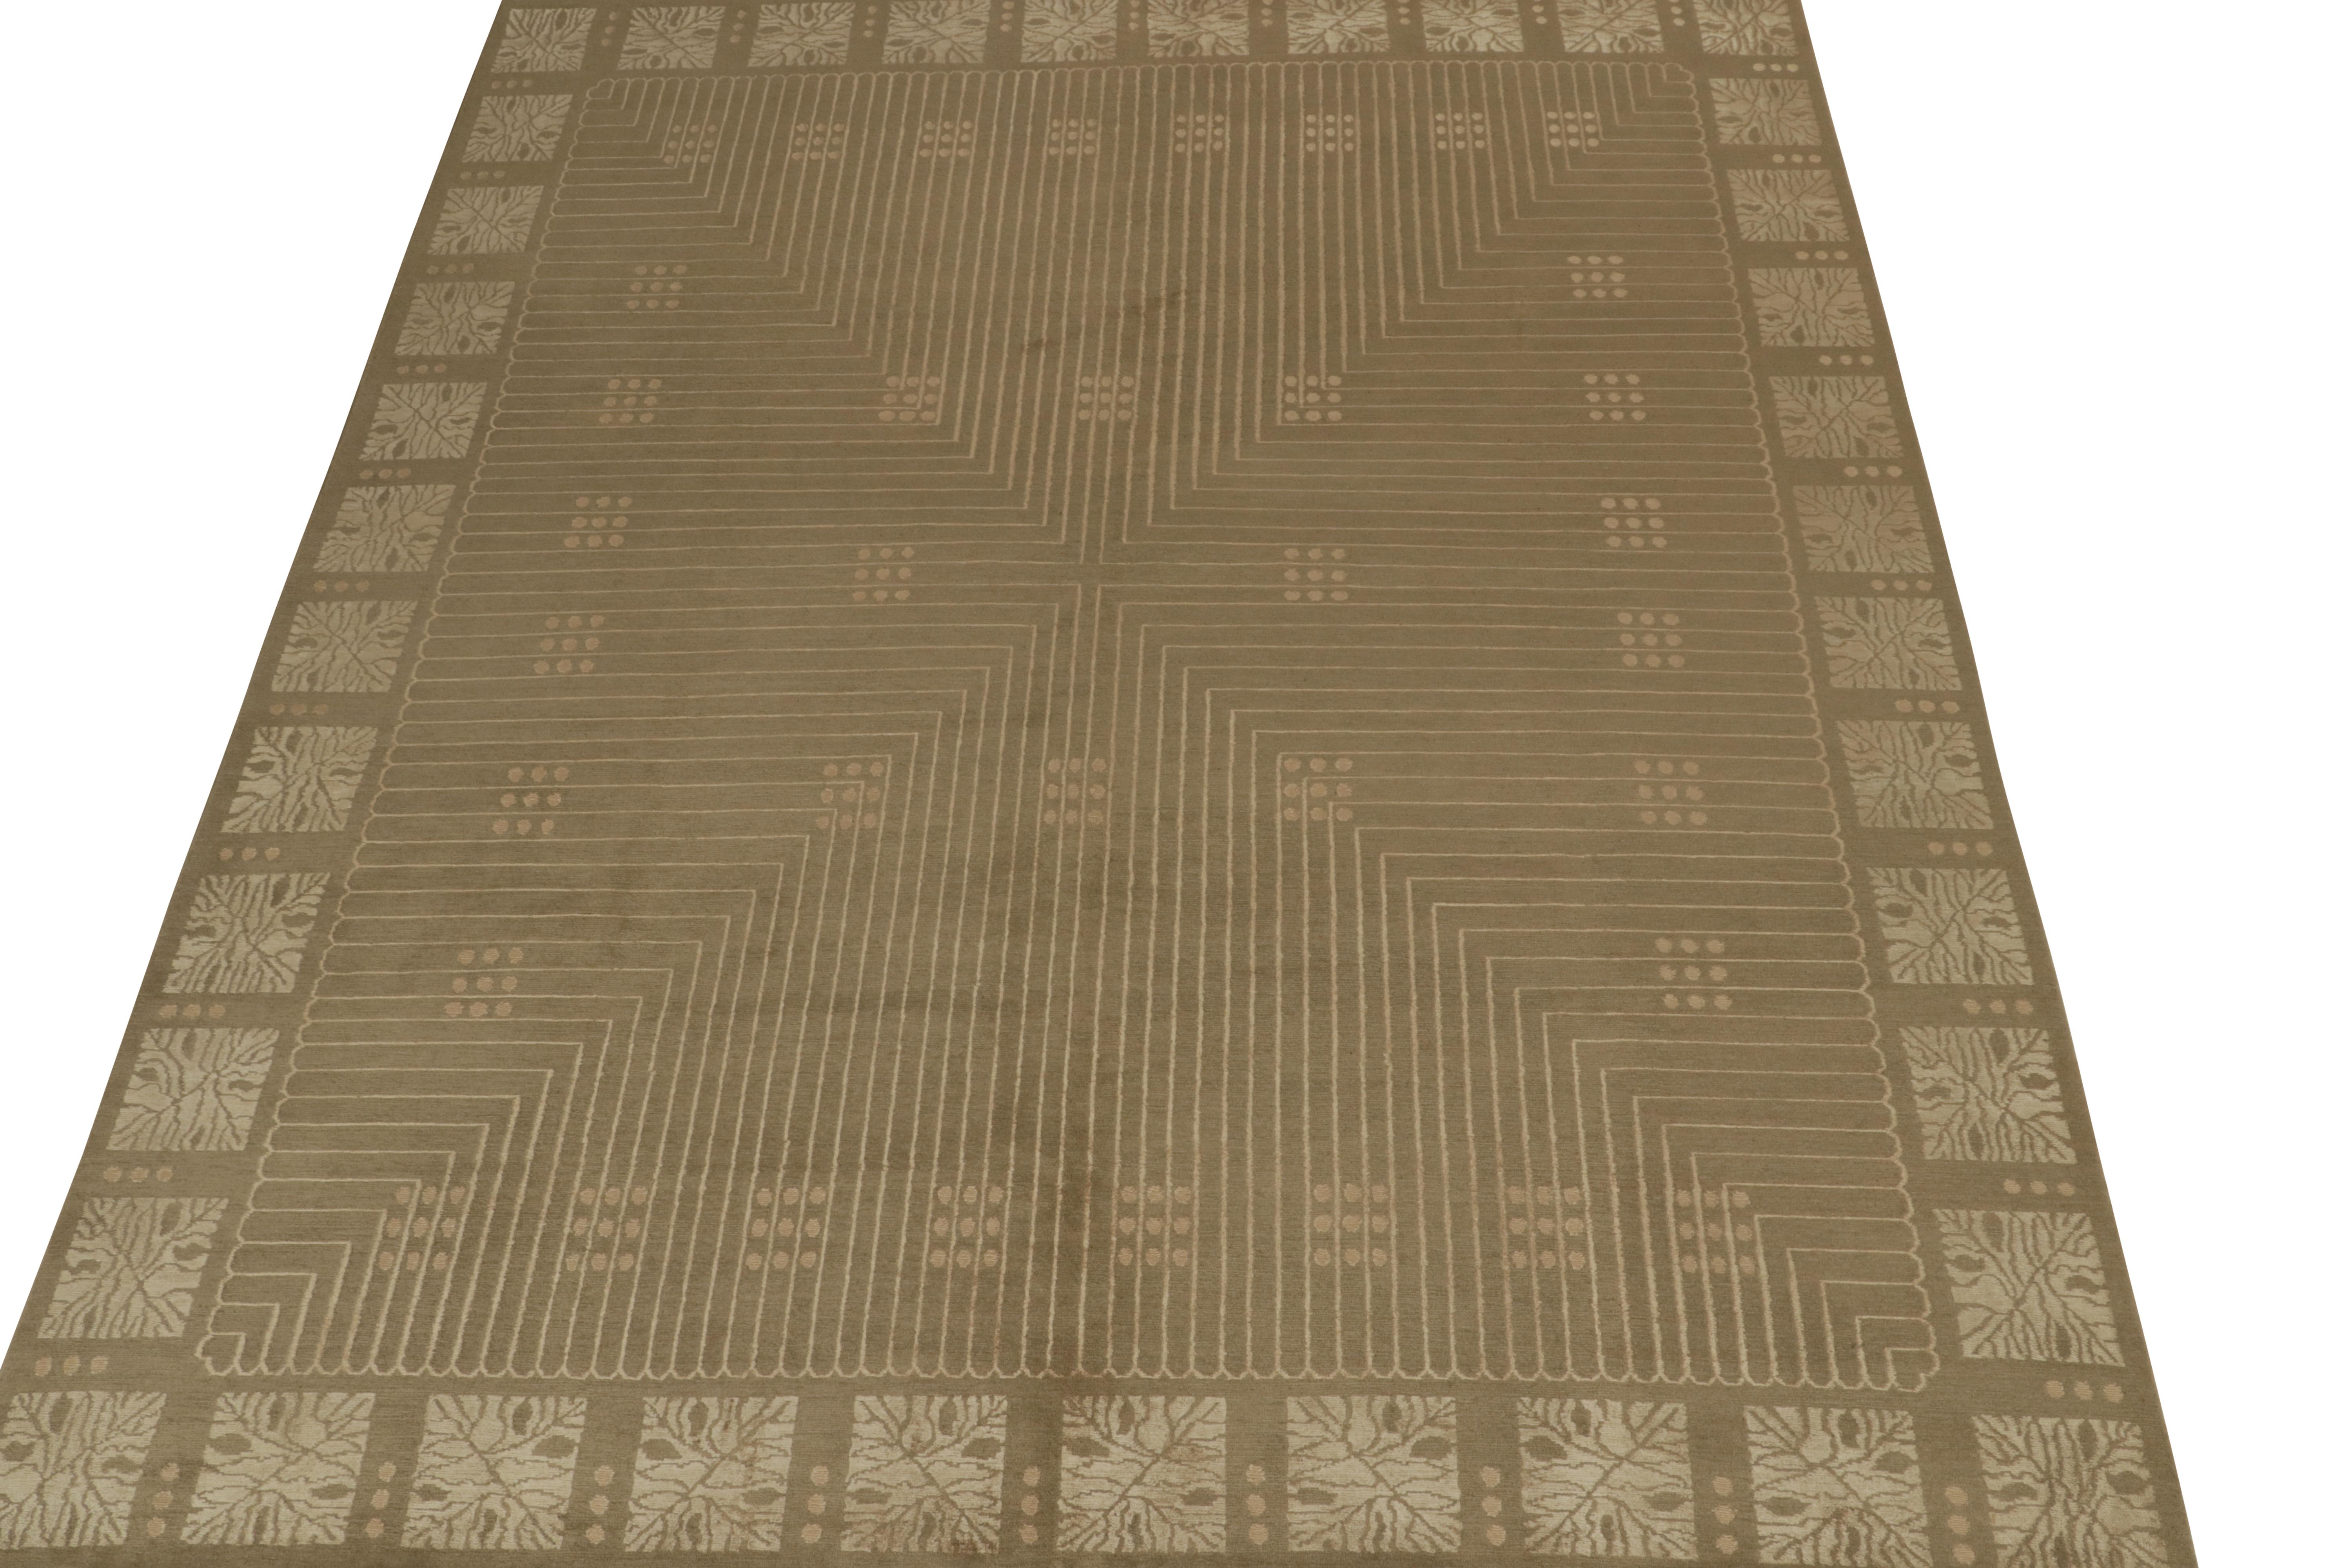 Dieser 8x10 große Art-Déco-Teppich ist ein kühner Neuzugang in der gleichnamigen Collection'S von Rug & Kilim. 

Weiter zum Design: 

Dieser besondere Teppich ist aus Wolle und natürlicher Seide handgeknüpft und sein Design greift den Stil des